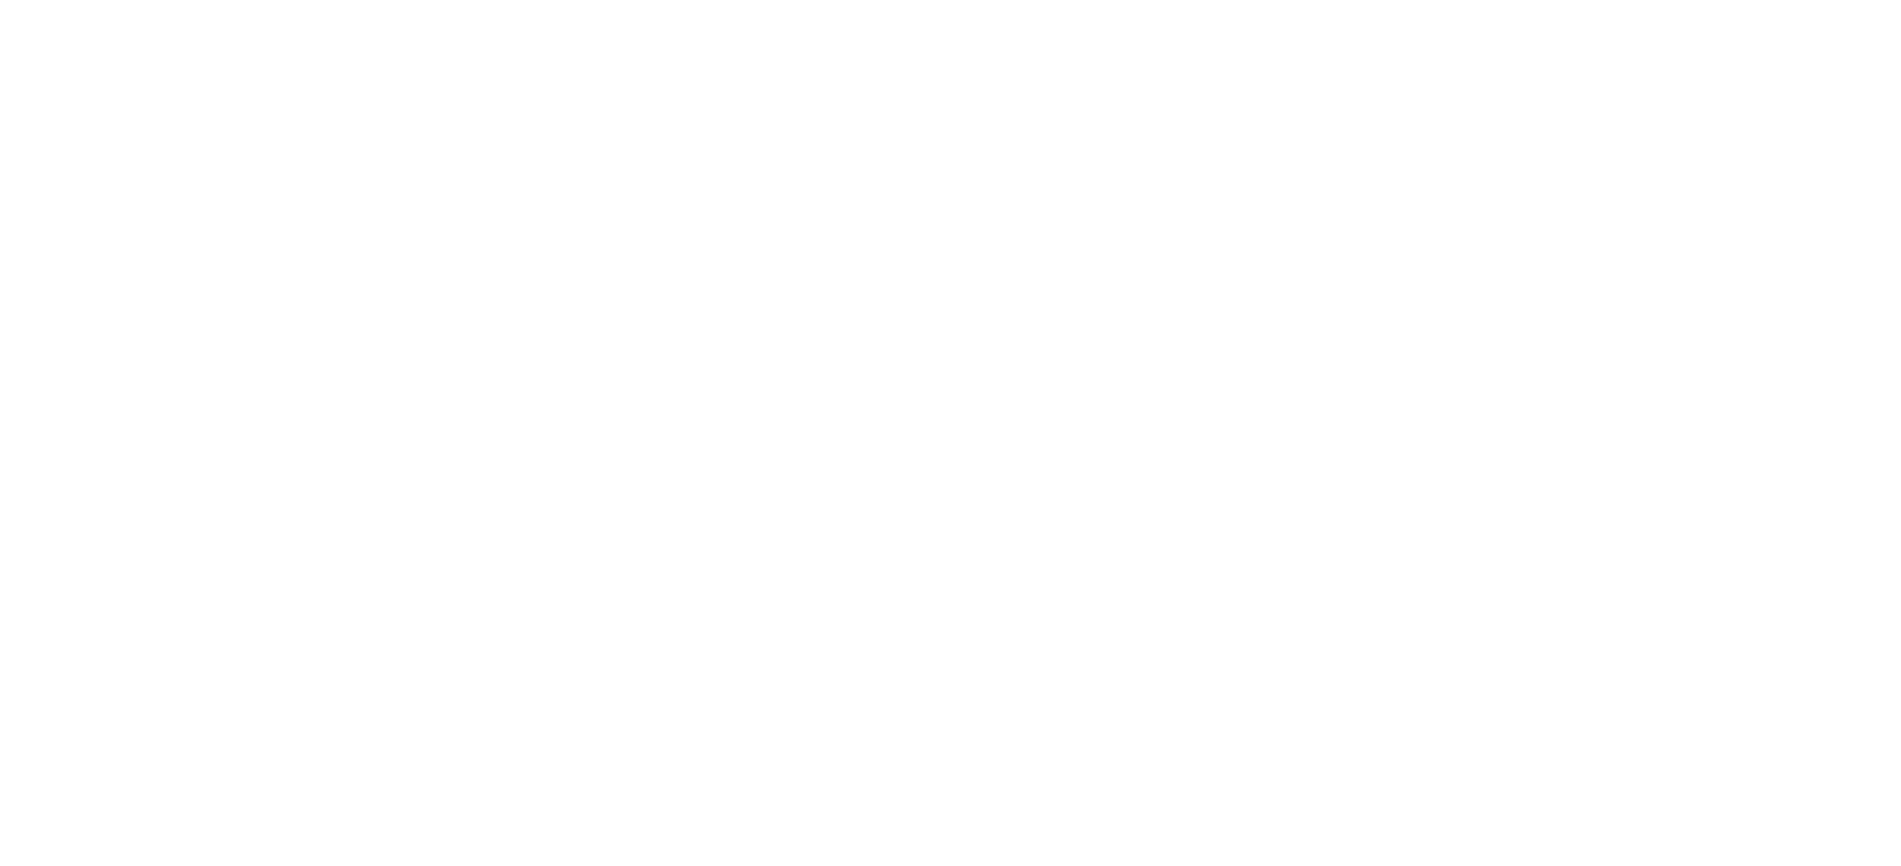 Partnership first logo white